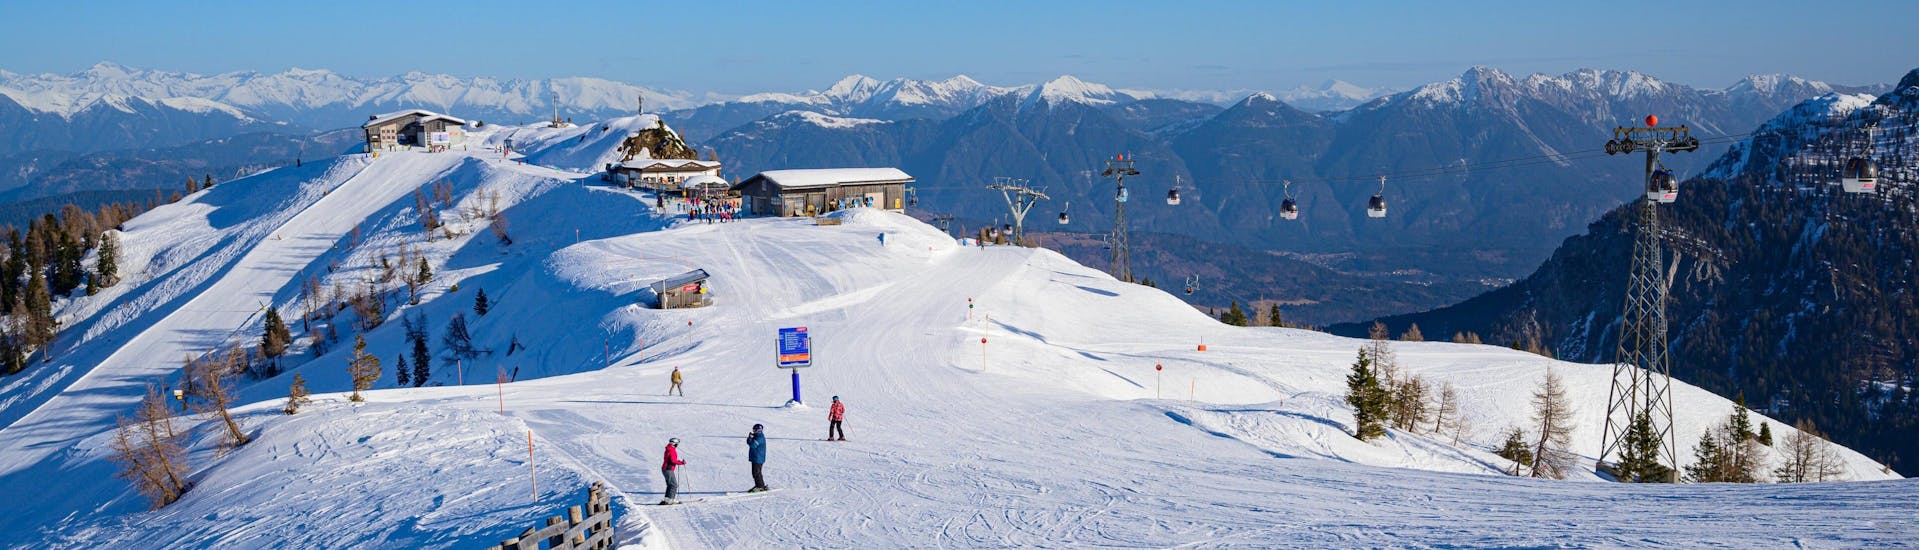 Tijdens een skiles met een skischool in Rauris heb je een prachtig uitzicht op besneeuwde bergtoppen.